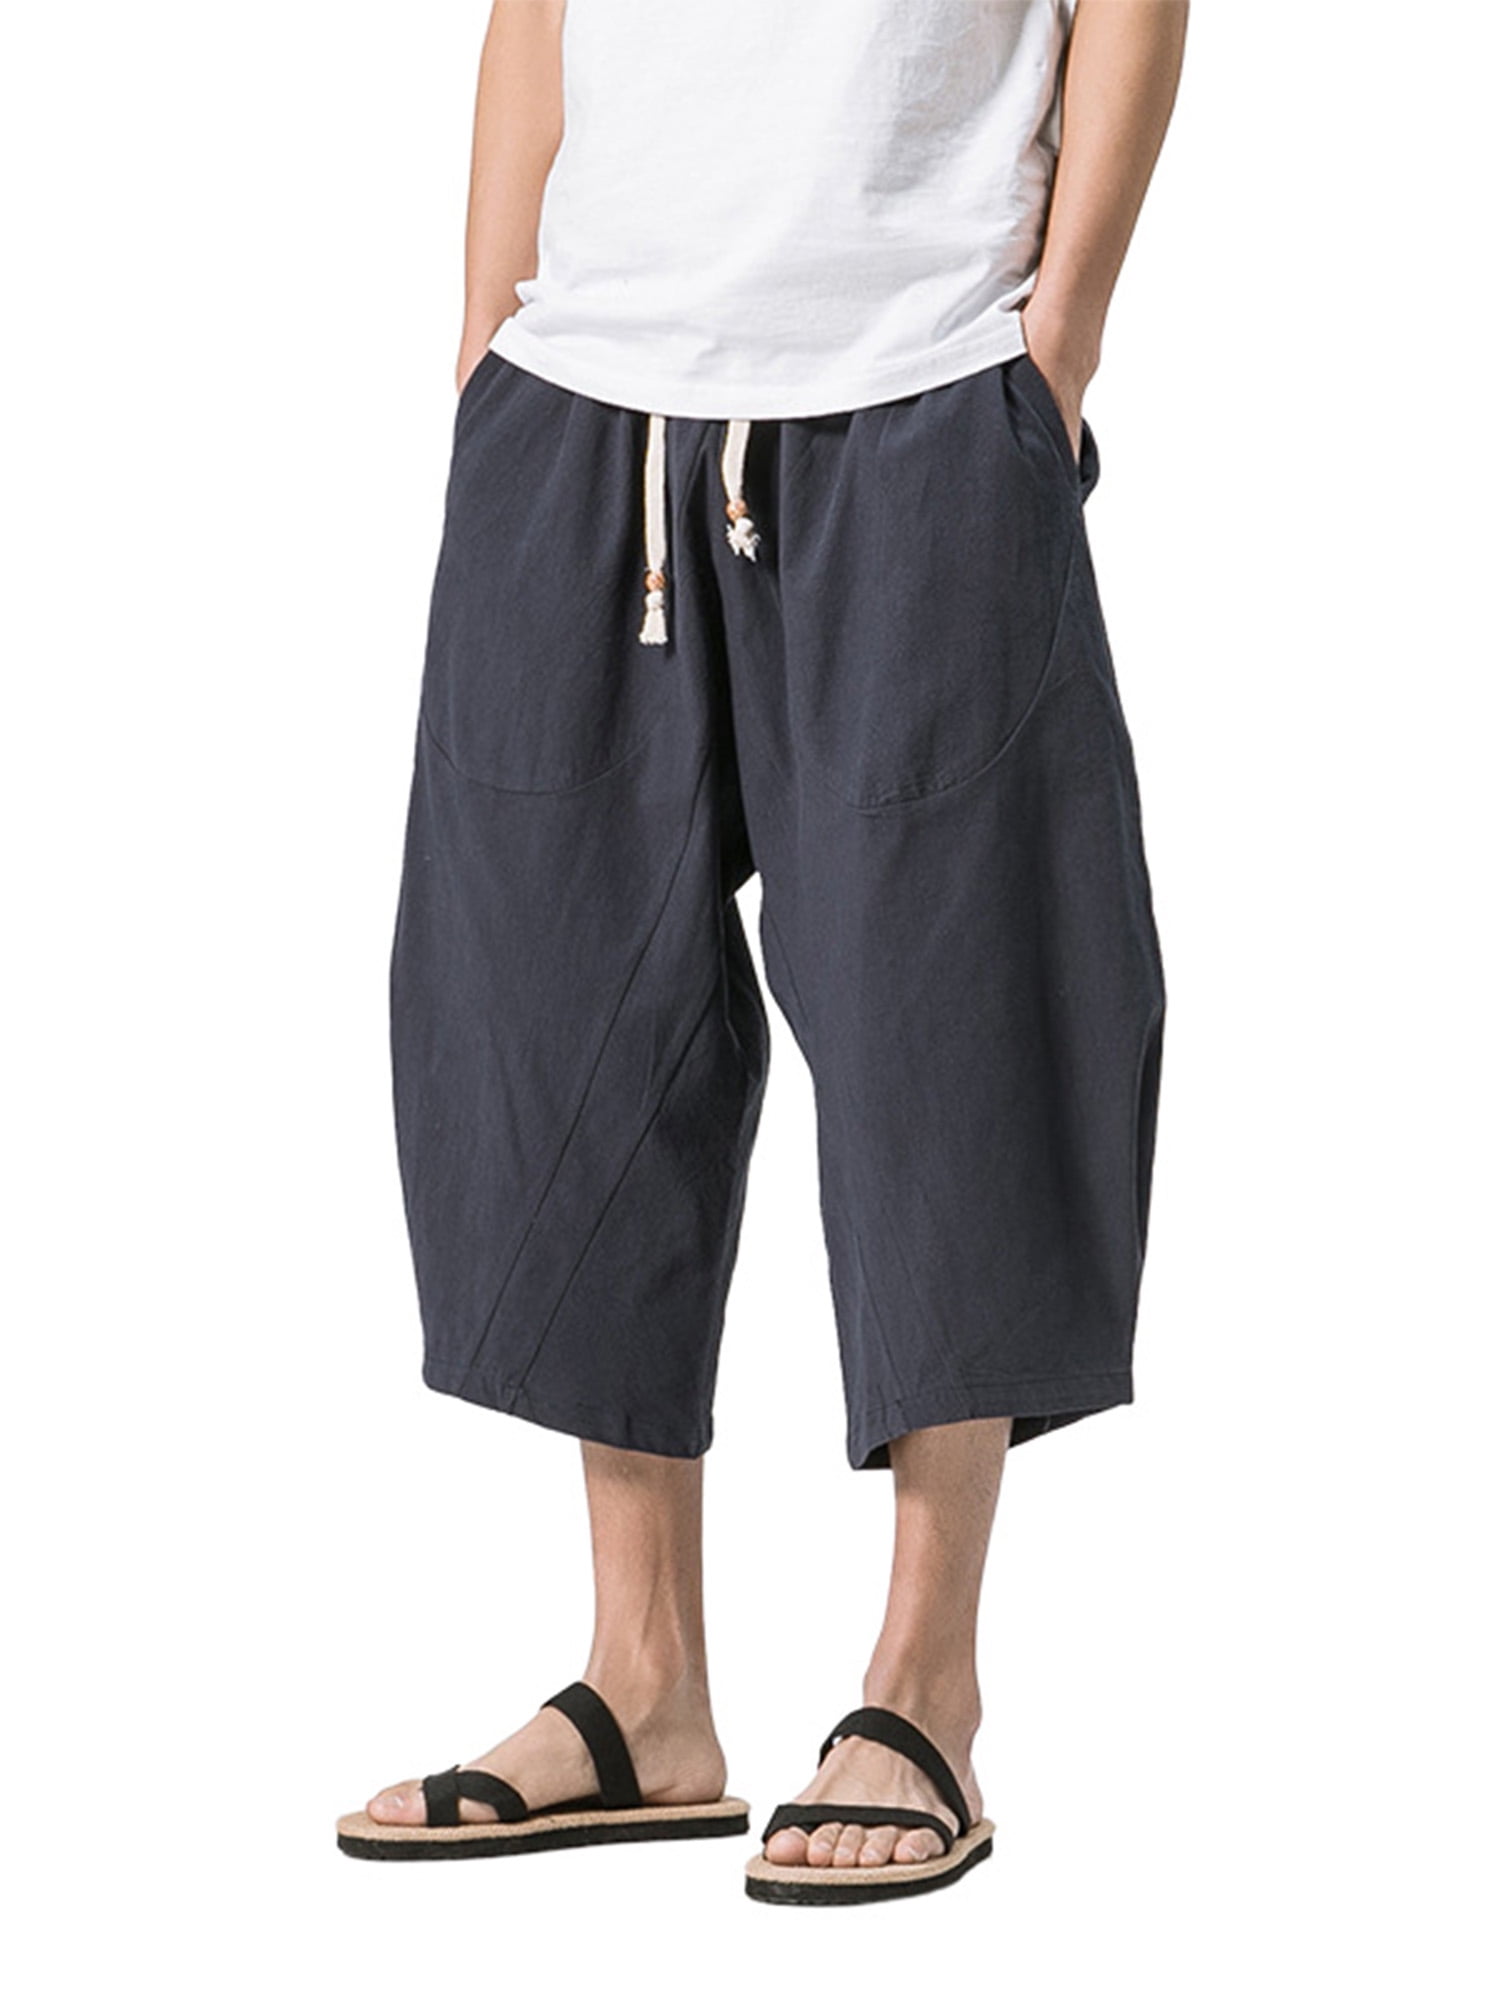 CVLIFE Mens Capri Long Shorts Below Knee Loose Fit Beach Sport Wear ...